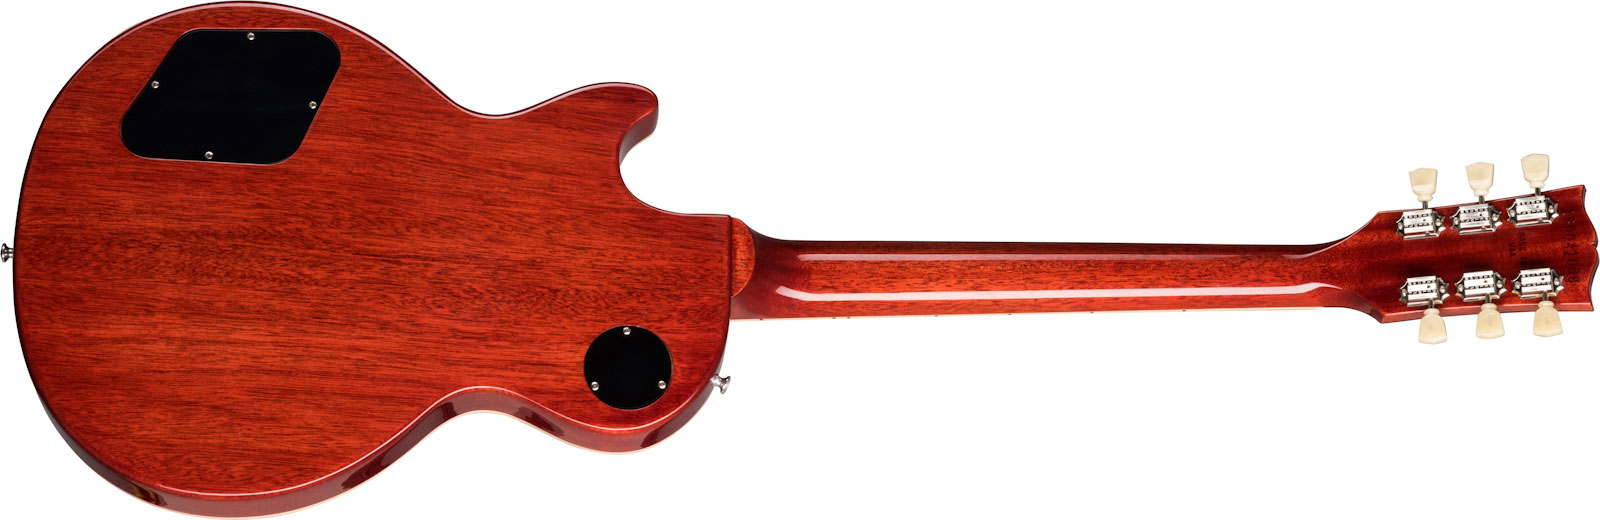 Gibson Les Paul Standard 50s 2h Ht Rw - Heritage Cherry Sunburst - Guitare Électrique Single Cut - Variation 4